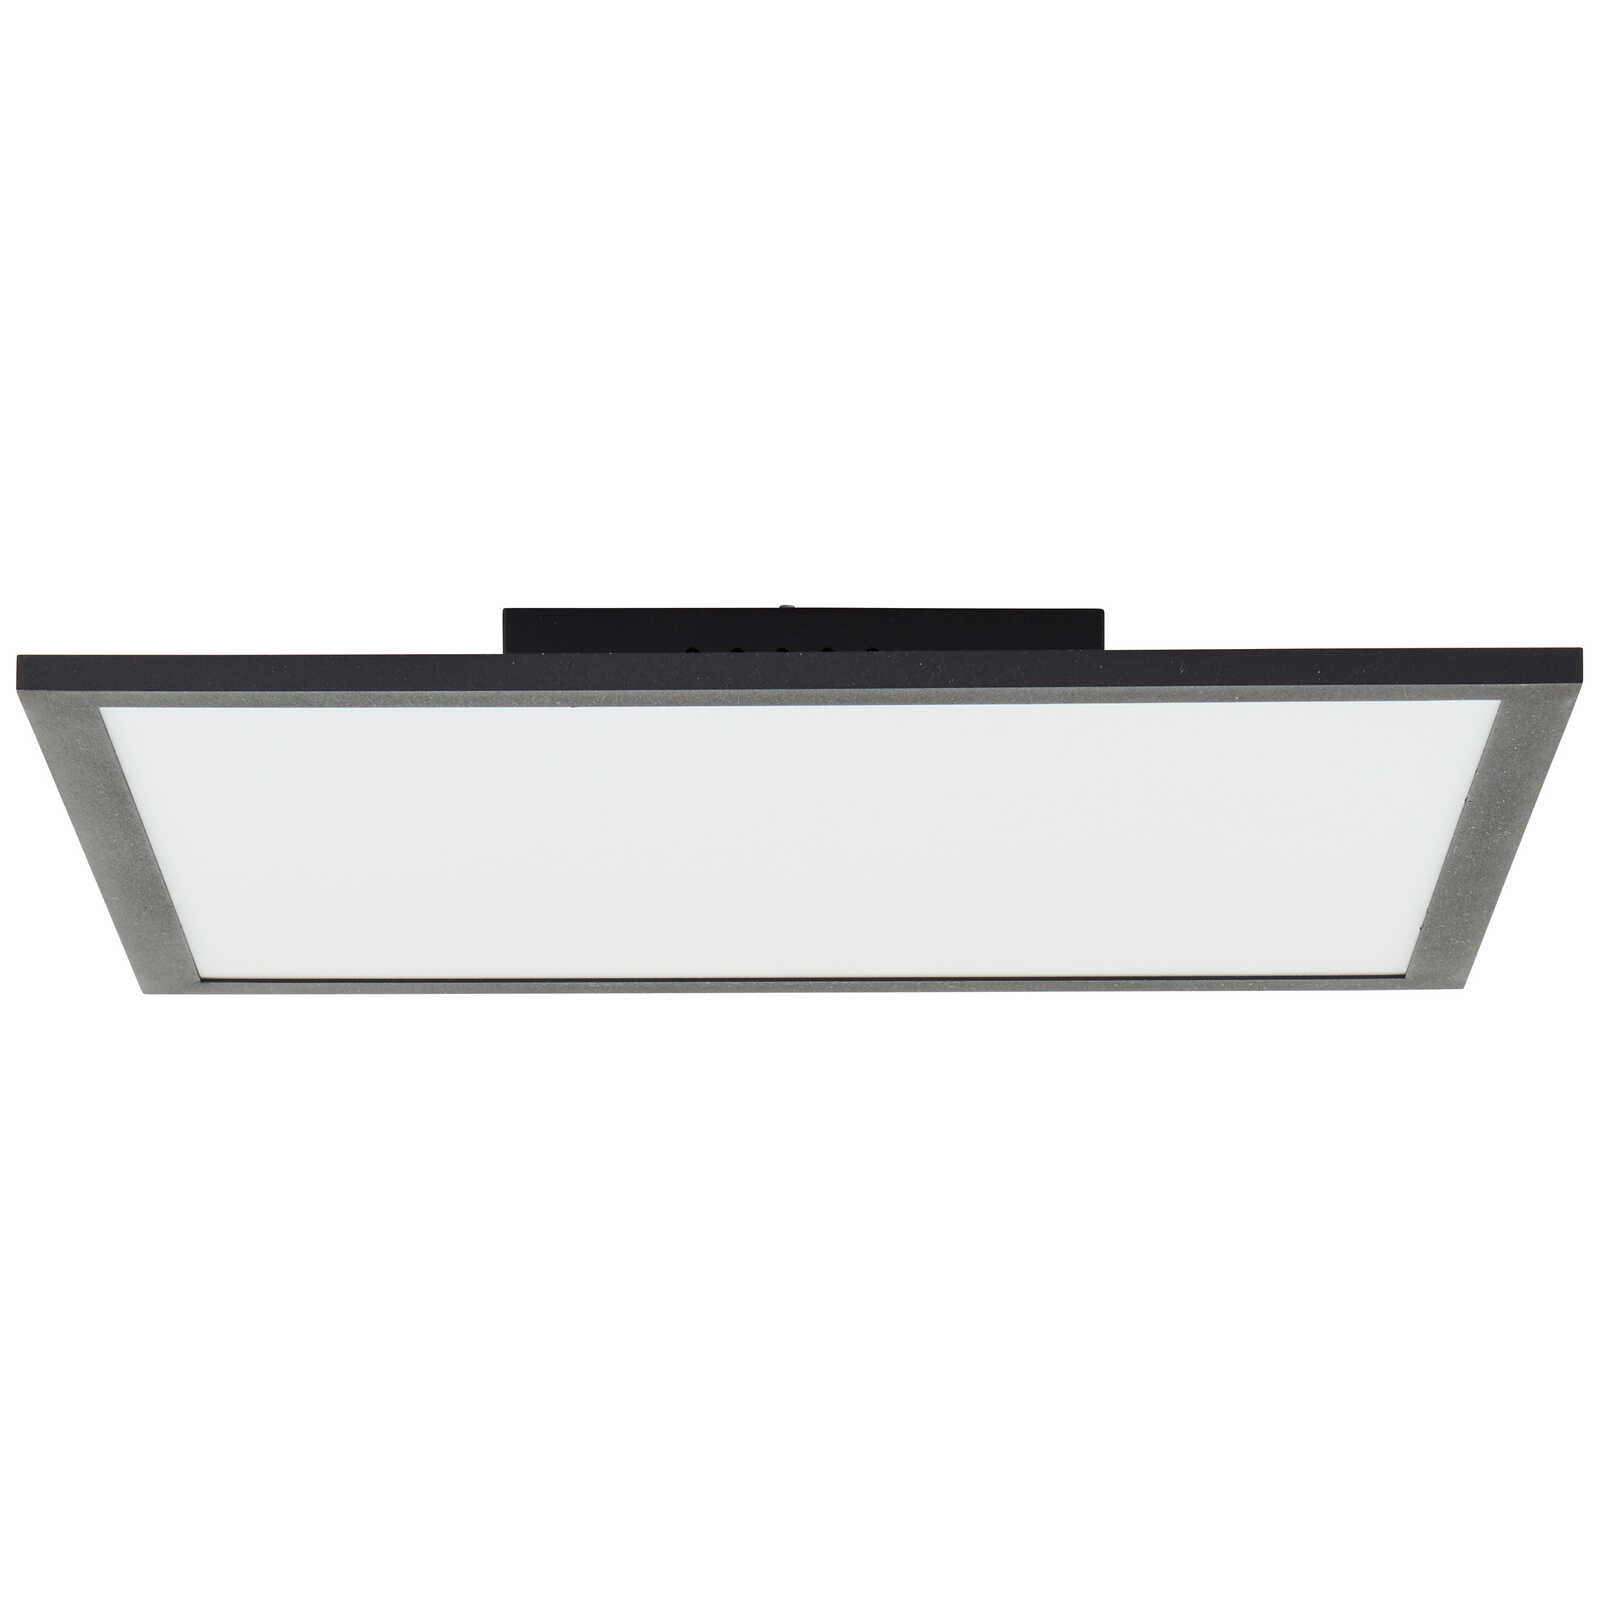             Plastic ceiling light - Jolien 2 - Black
        